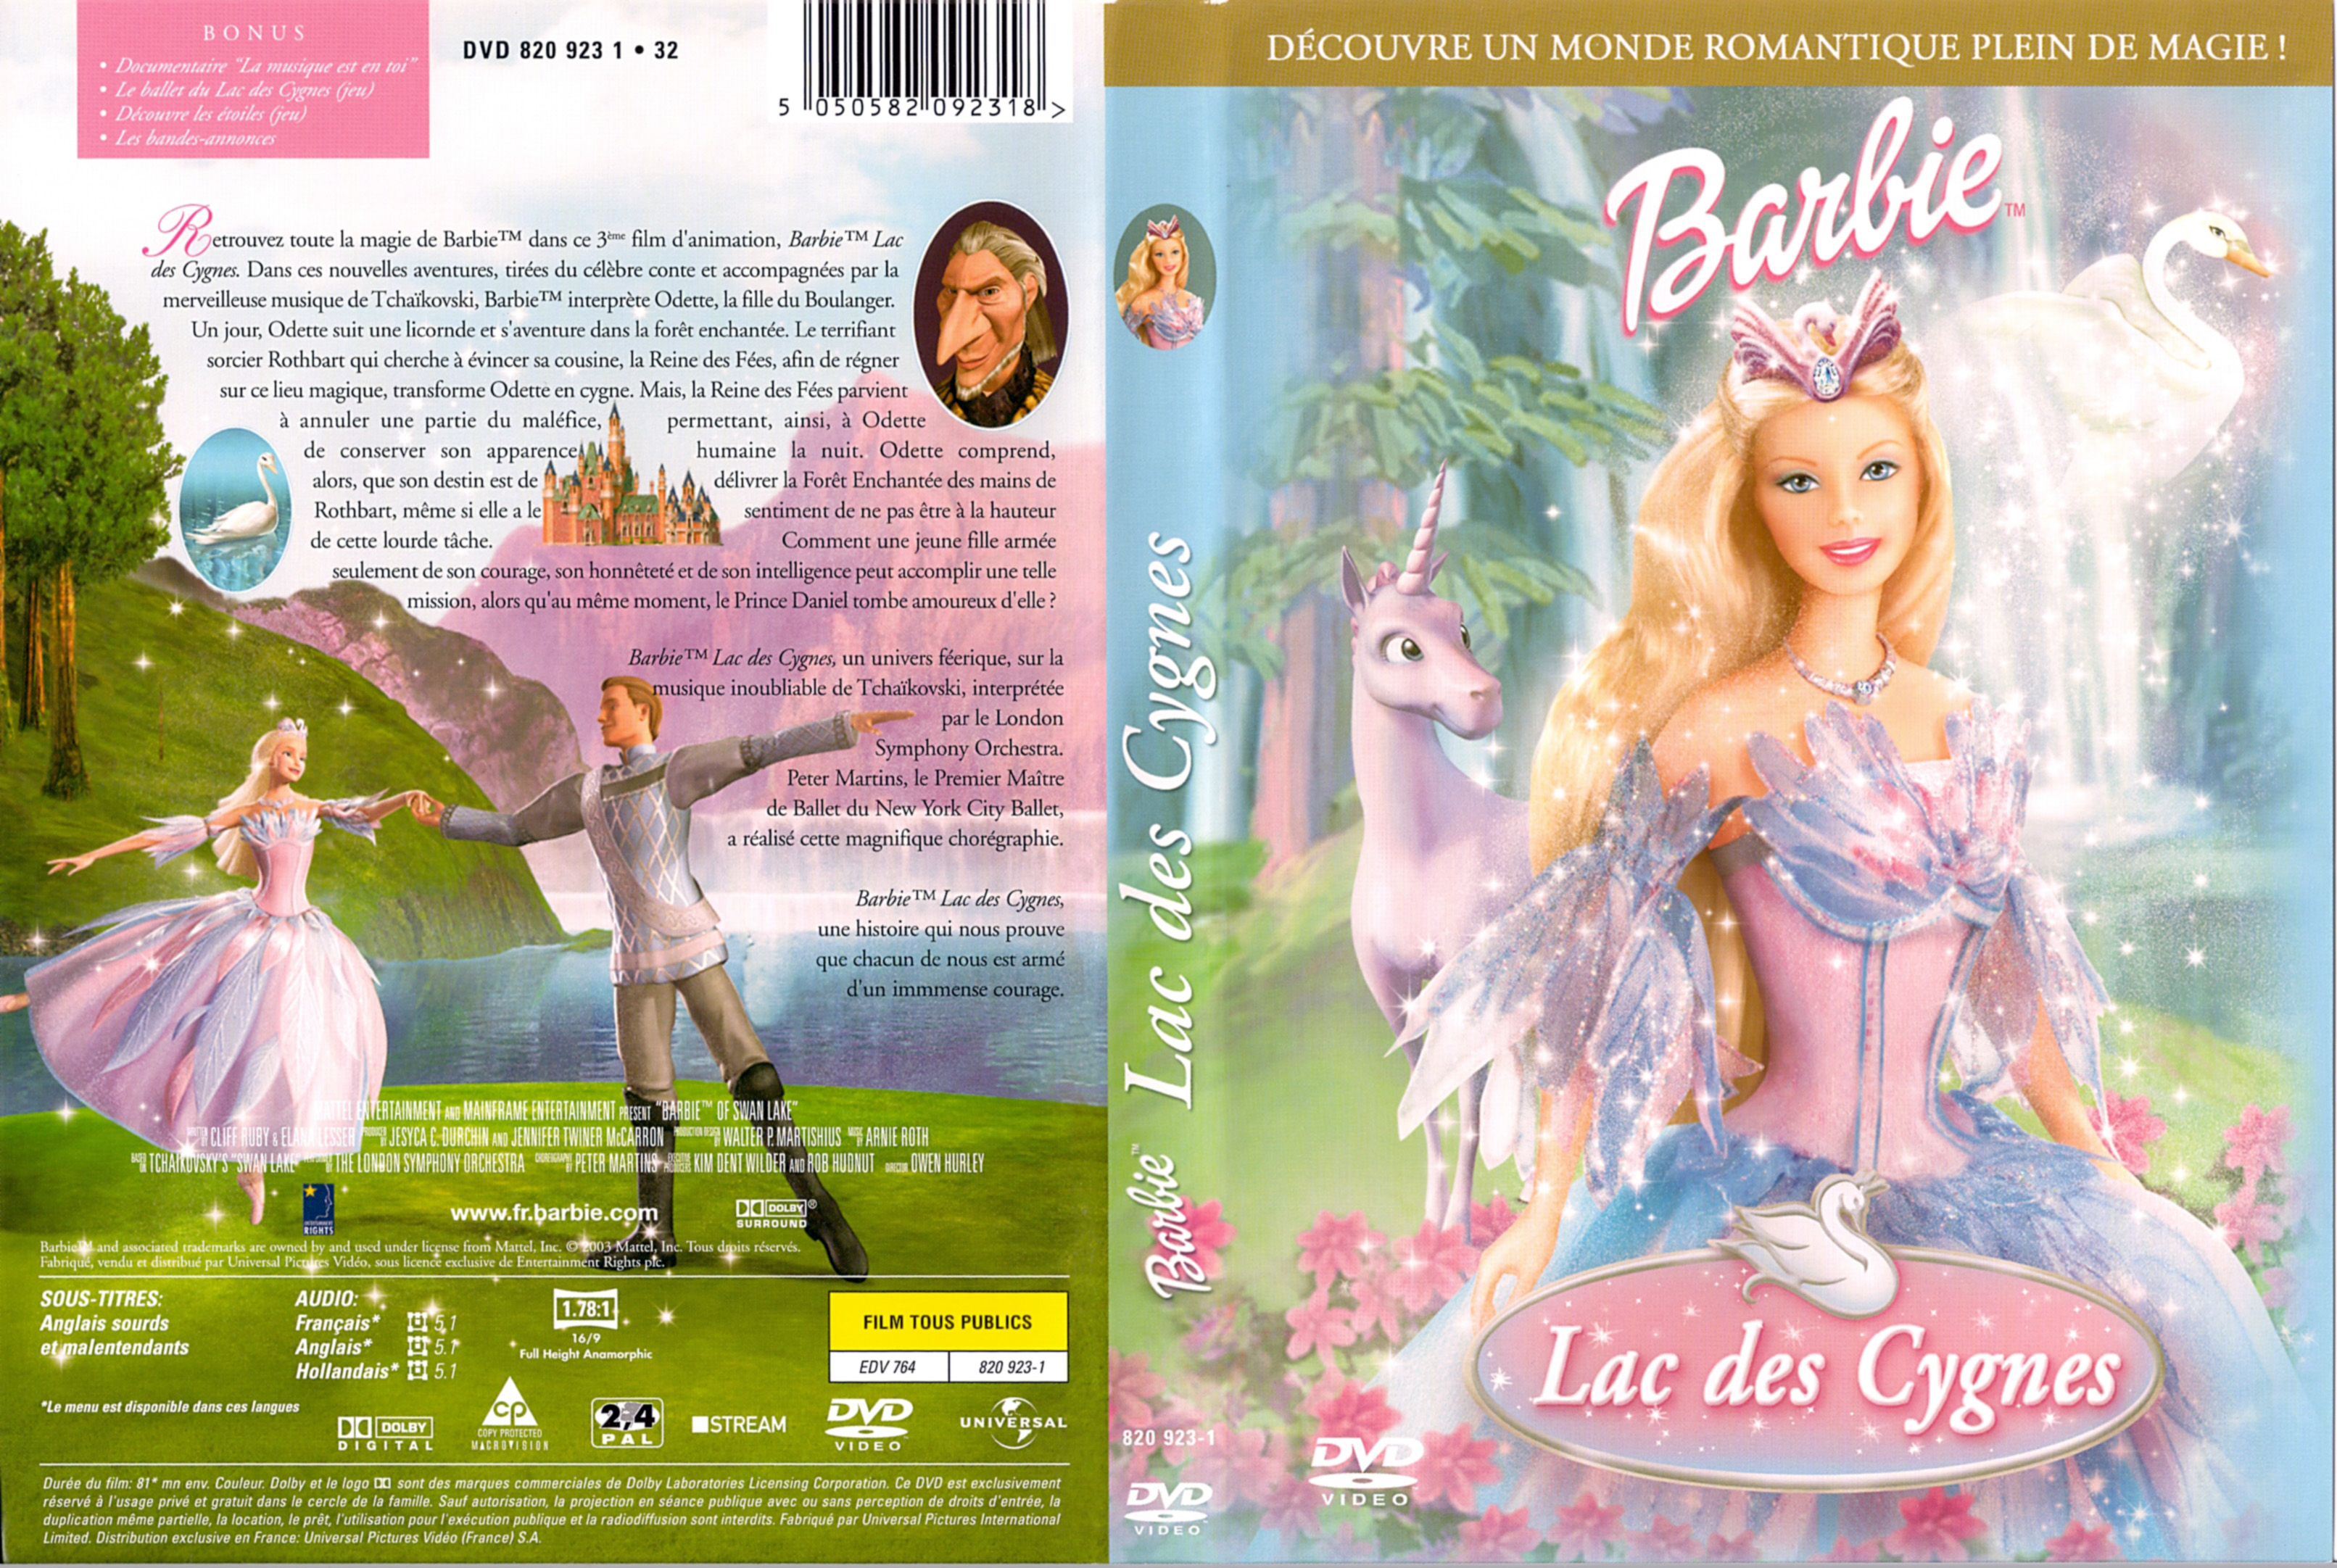 Jaquette DVD Barbie Lac des Cygnes v2